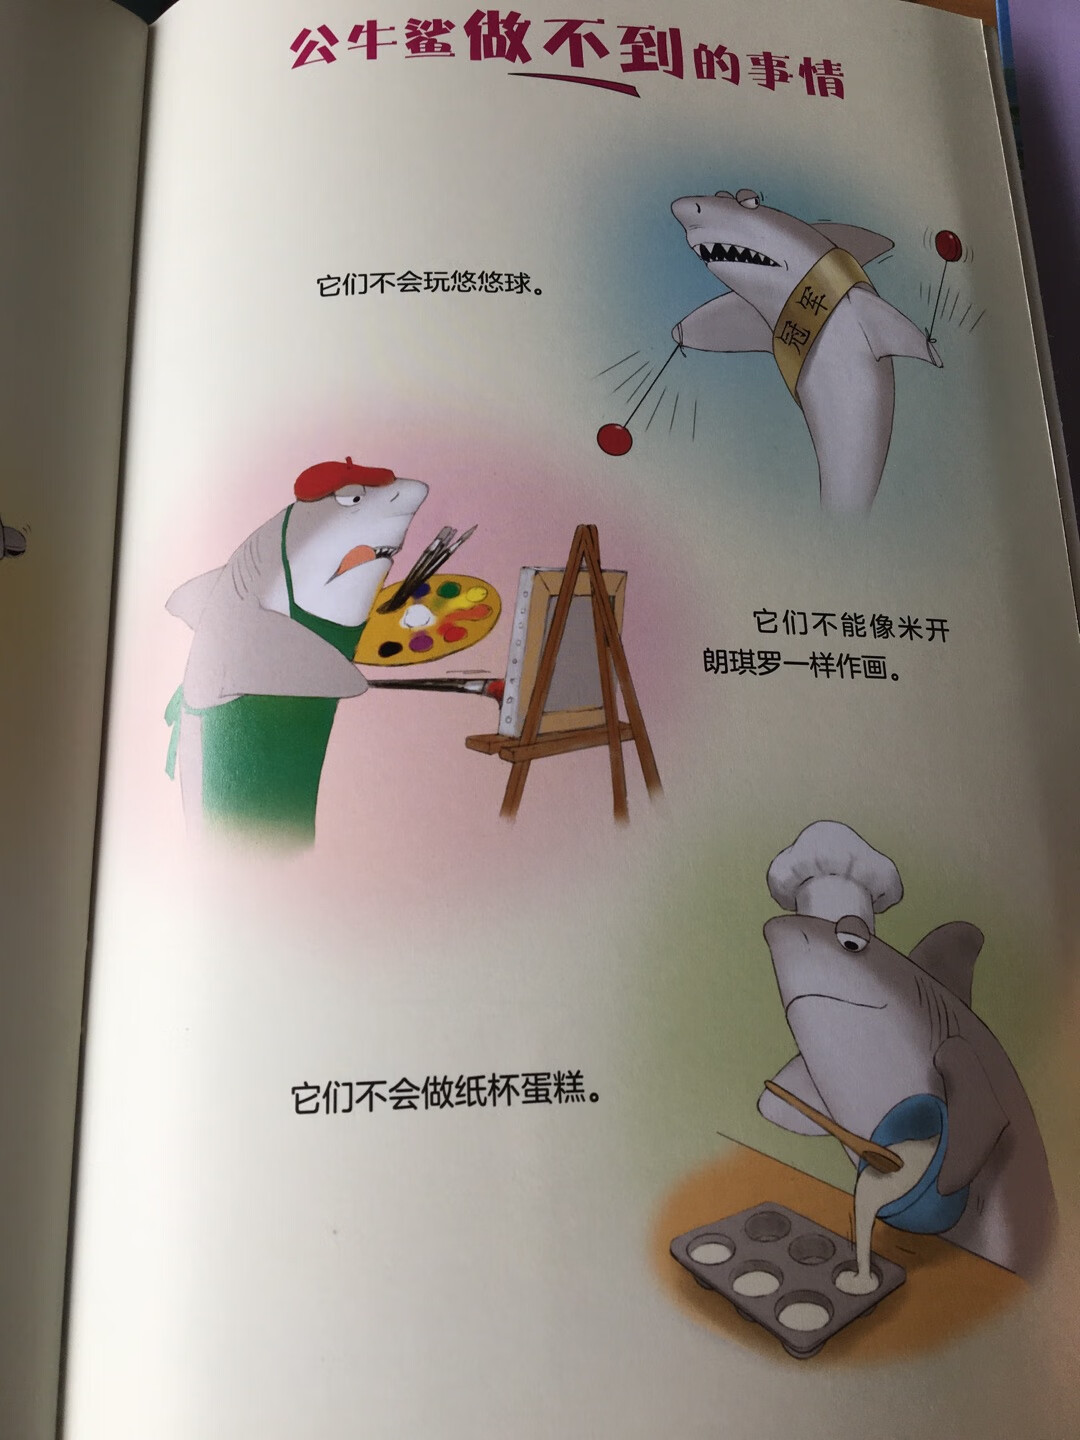 很好的一套科普书，知识丰富，图画形象#真，色彩适度。孩子看书长知识，根据图画里的动物自己先画出再剪下来，进行拓展。